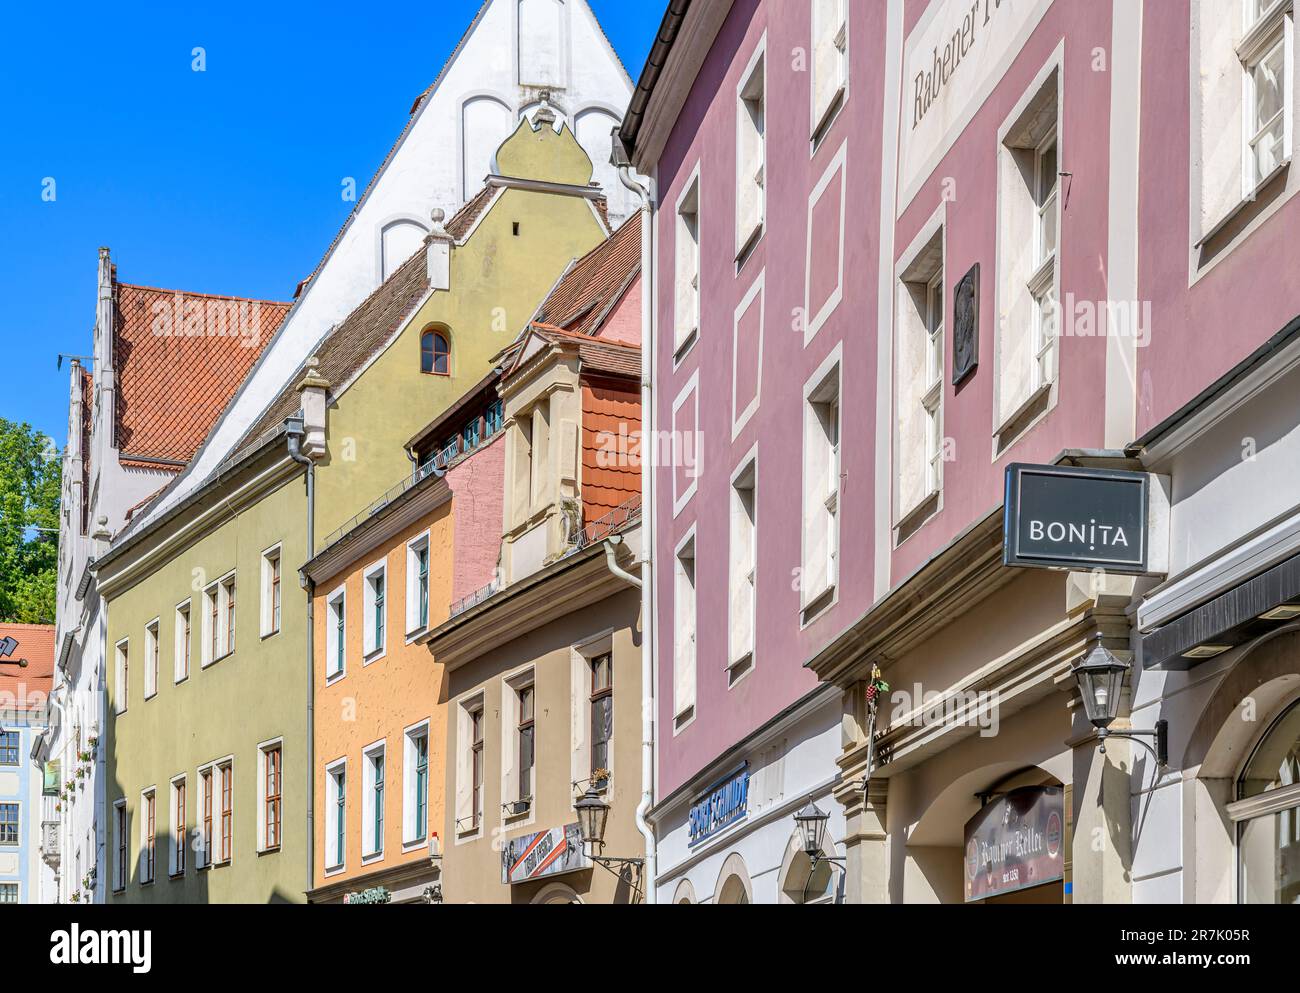 La belle vieille ville de Meissen près de Dresde dans l'état libre de Saxe, Allemagne. Prise de vue le jour de l'été avec un ciel bleu vif. Banque D'Images